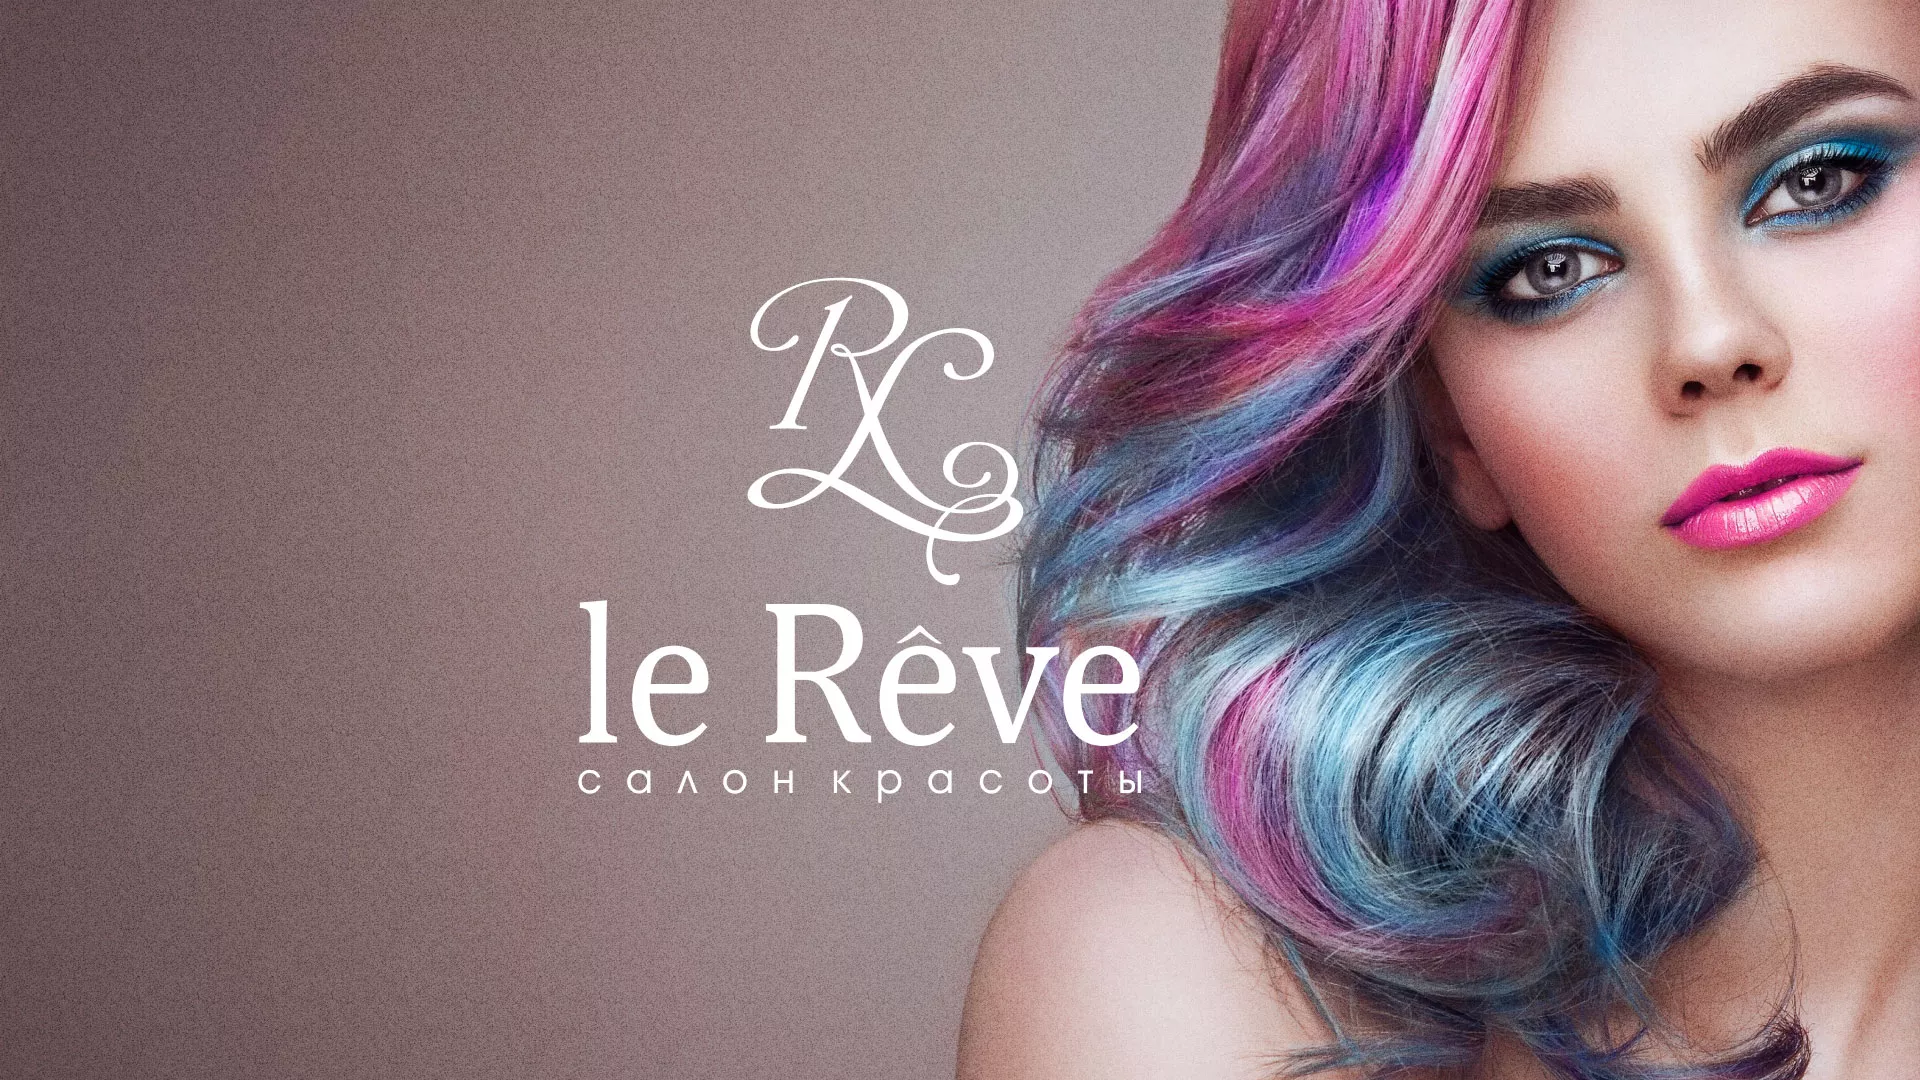 Создание сайта для салона красоты «Le Reve» в Старой Руссе